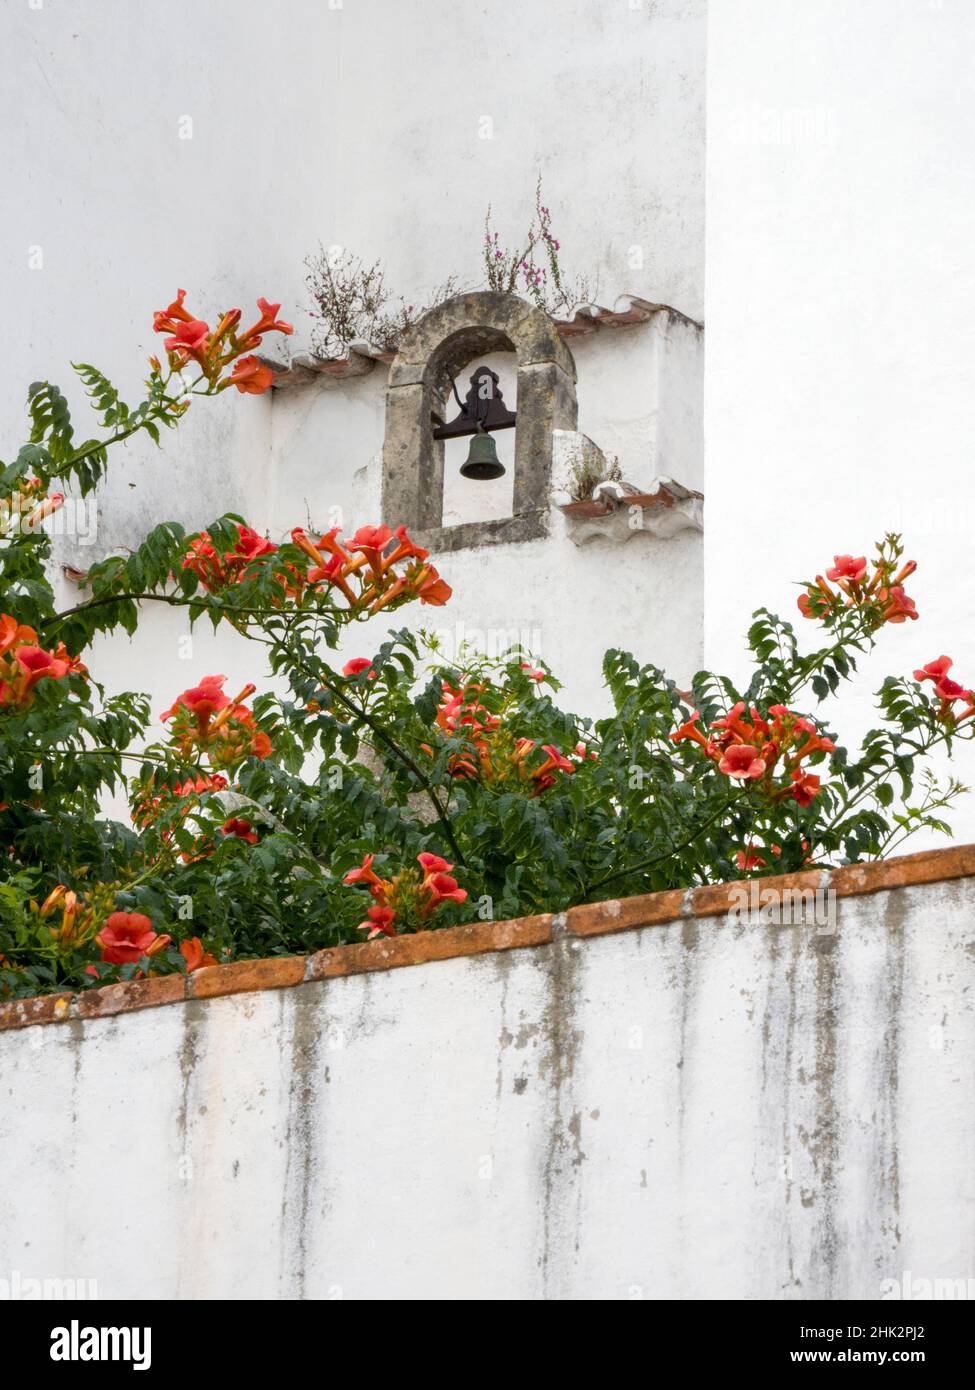 Portugal, Obidos.Trompette orange de vigne poussant sous une cloche d'église dans le village médiéval d'Obidos. Banque D'Images